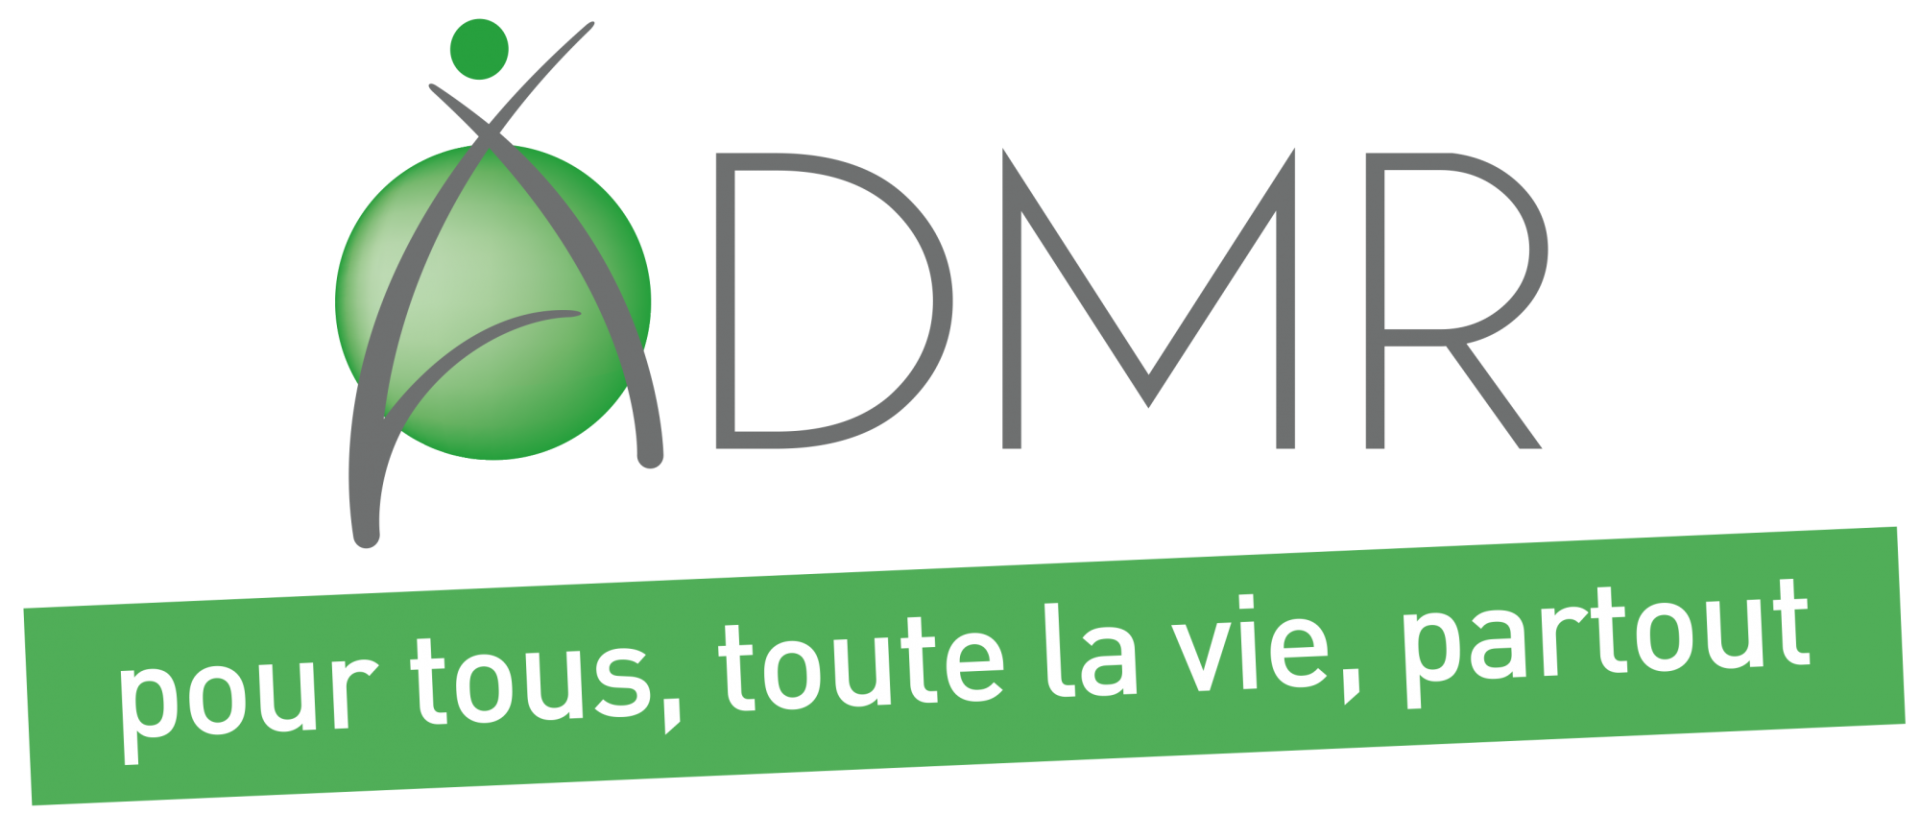 Logo admr